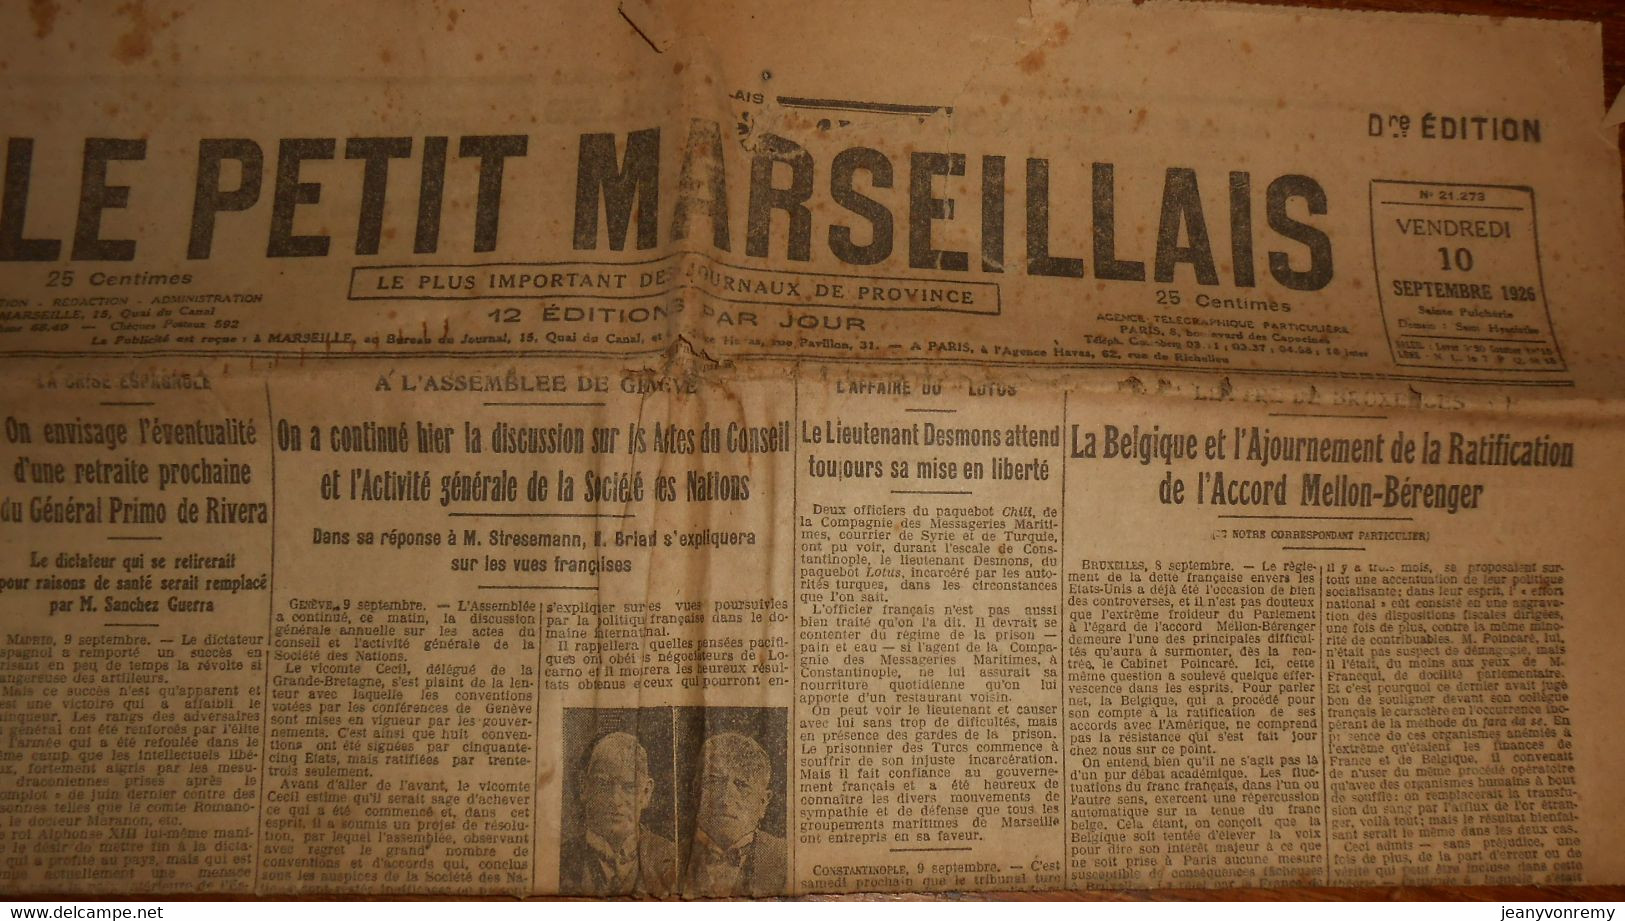 Le petit Marseillais. Dernière édition. Vendredi 10 Septembre 1926.